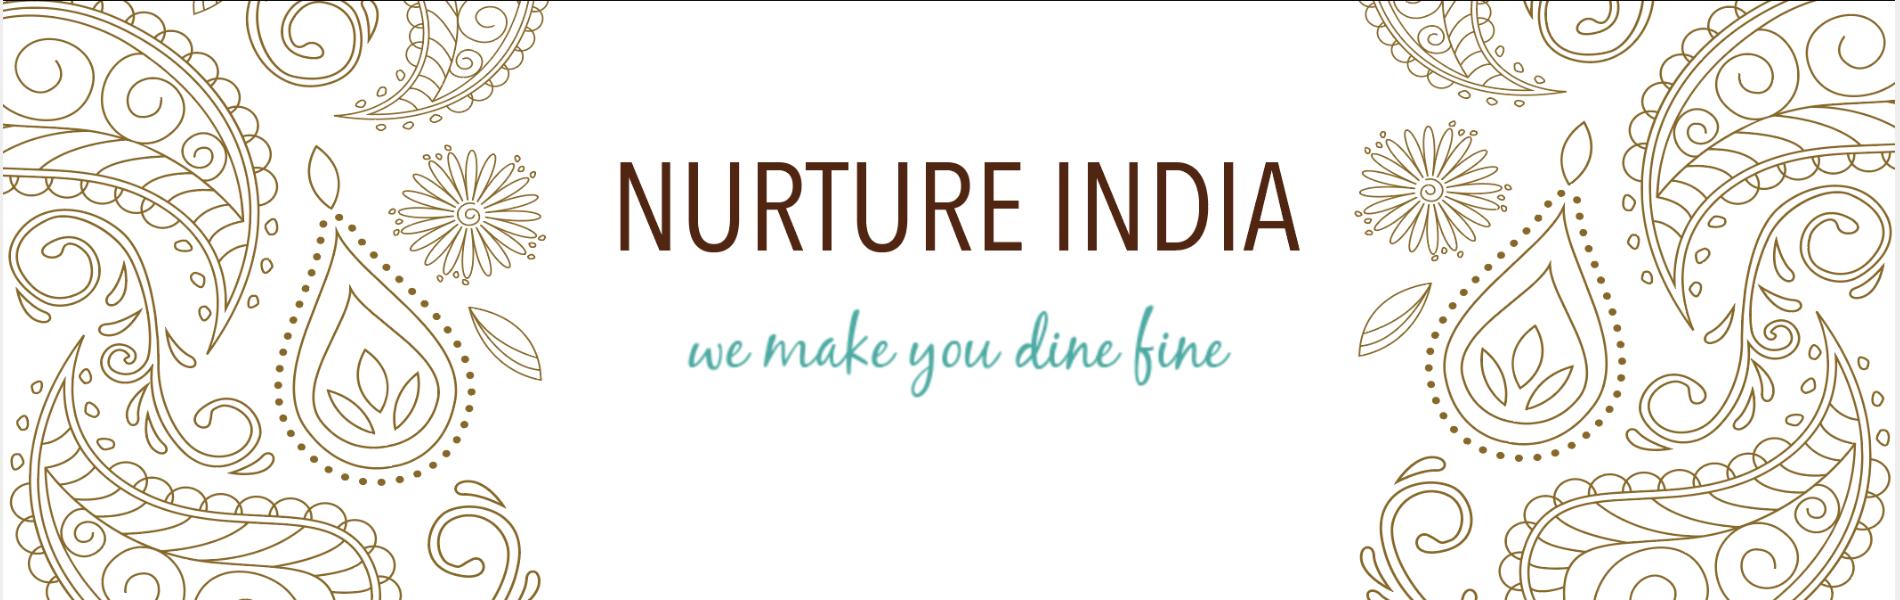 Nurture India